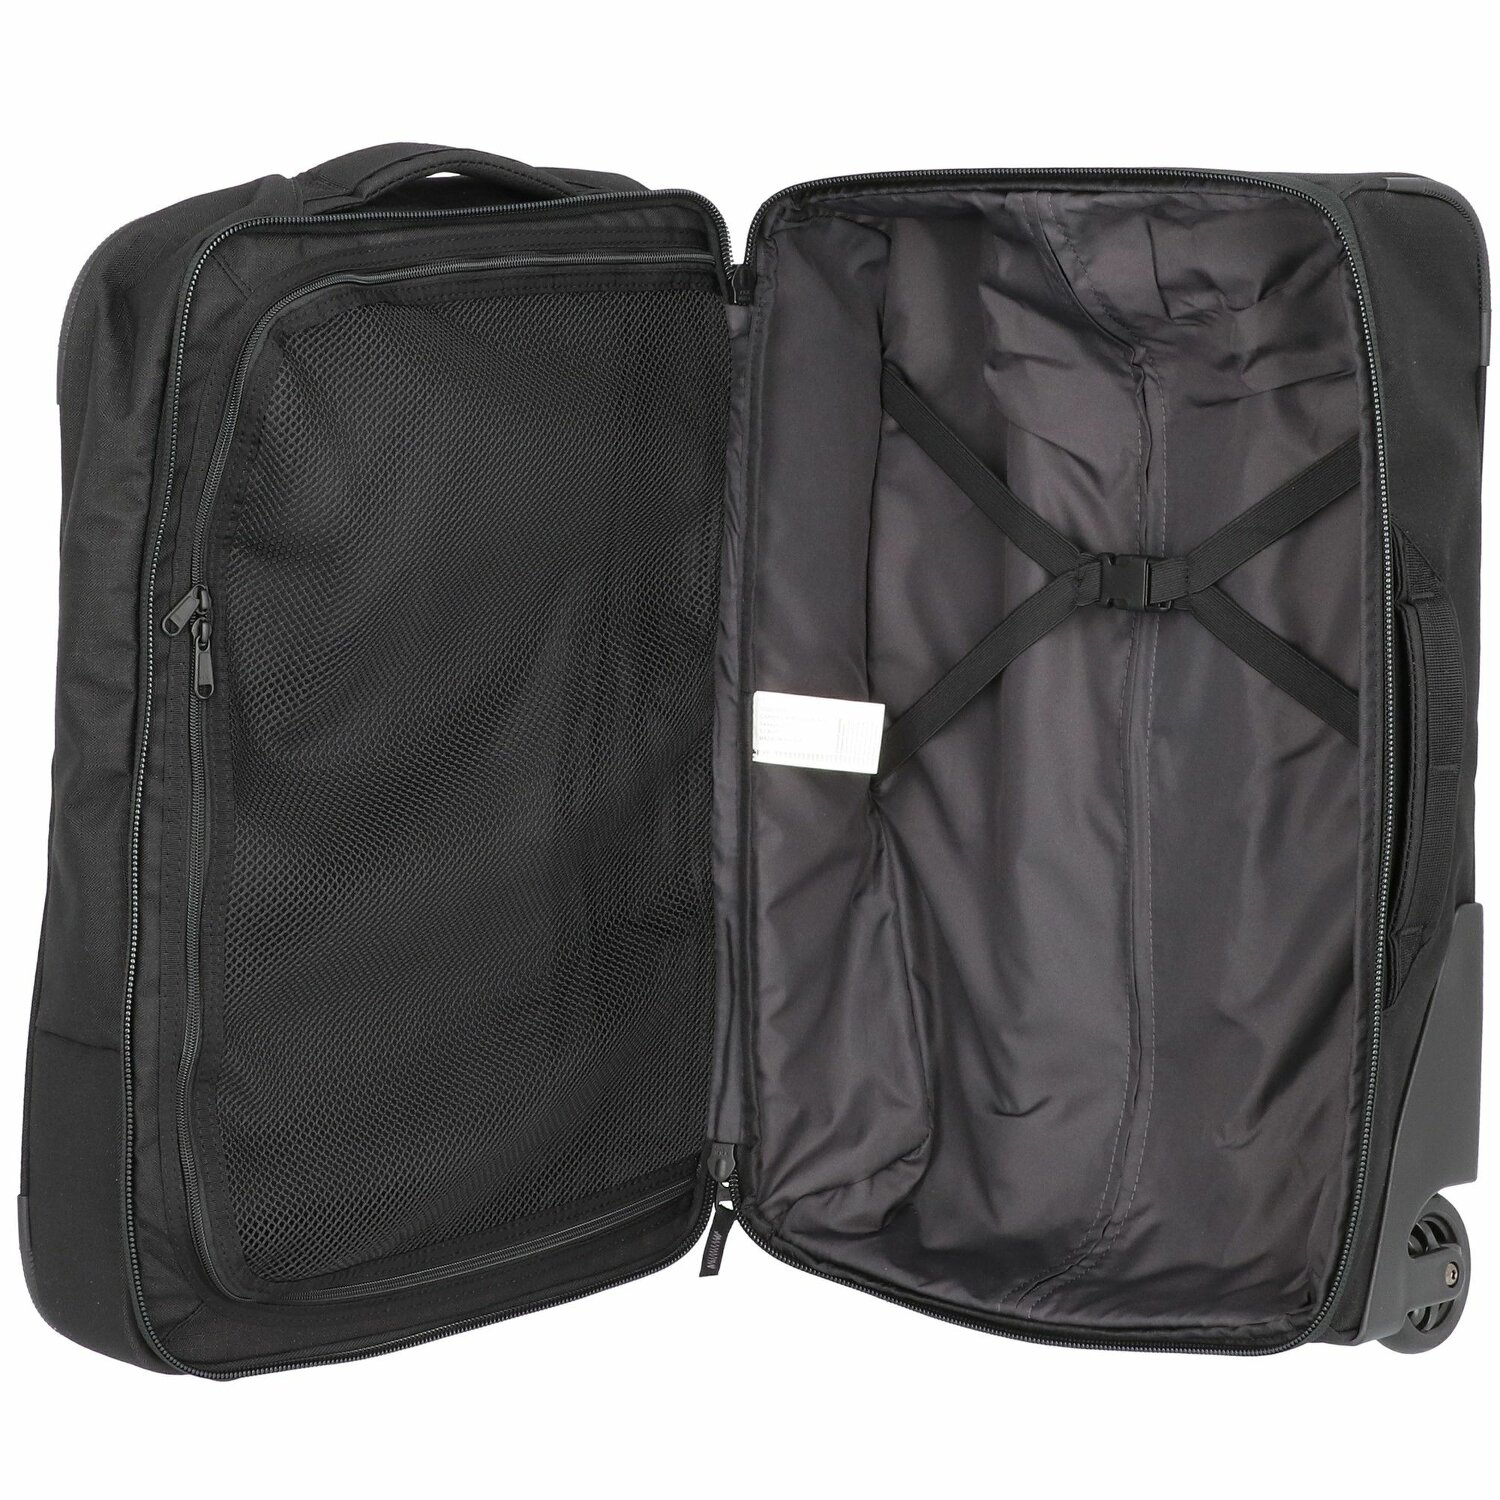 valise à roulettes robuste compartiment principal spacieux valise Marque : DAKINEDakine Valise Carry On sur roulettes Sac de voyage 